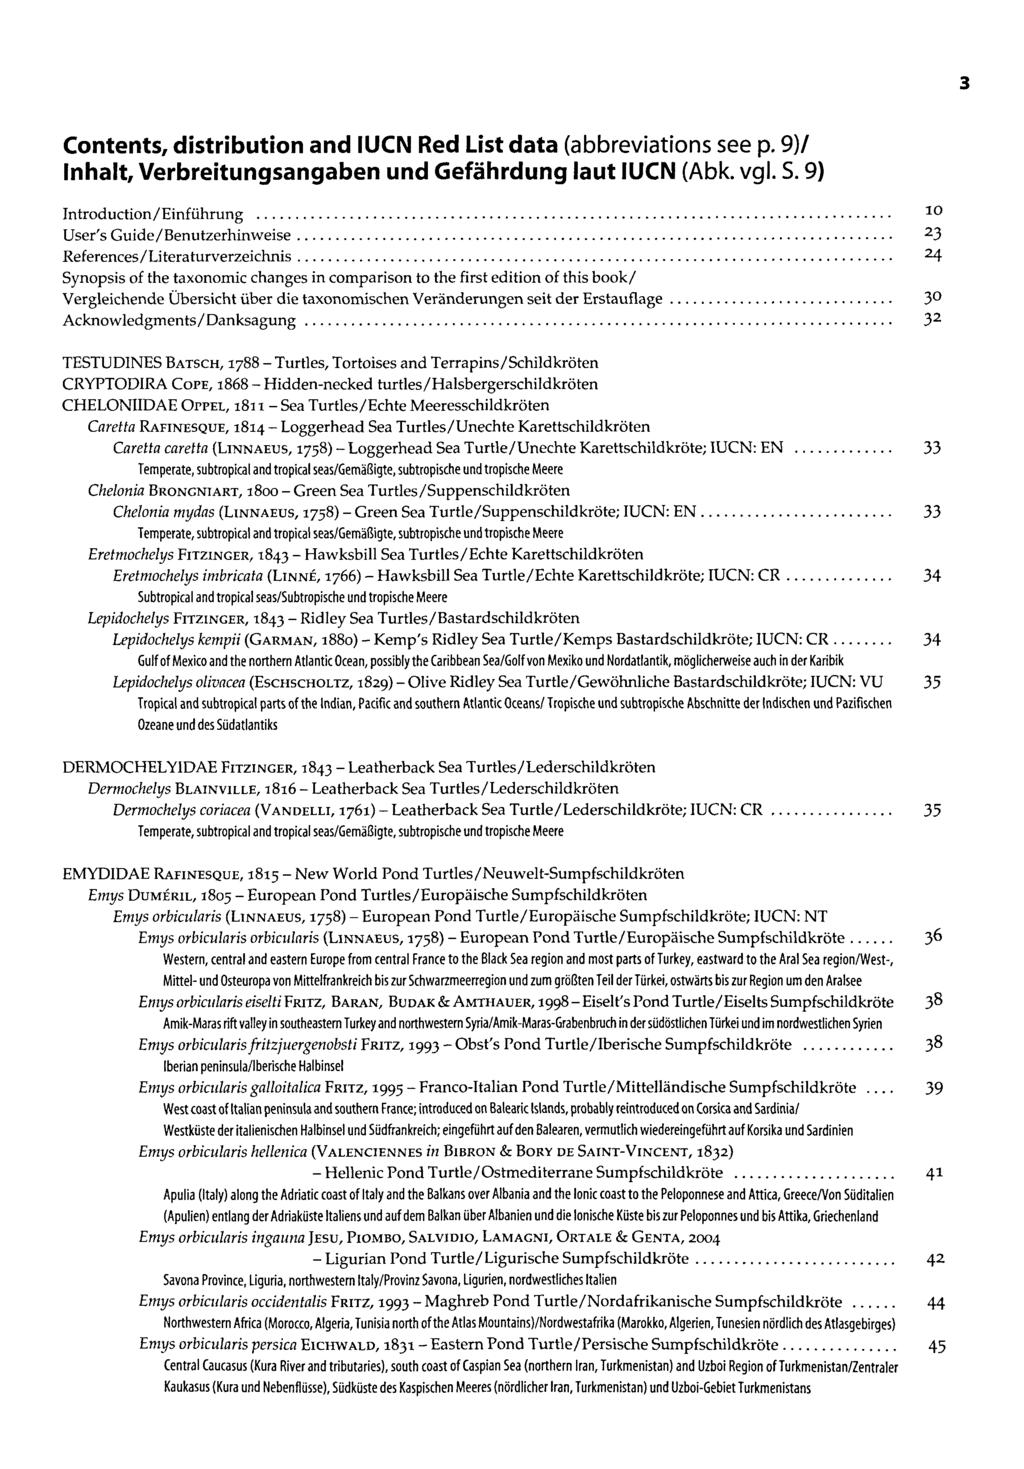 Contents, distribution and IUCN Red List data (abbreviations see p. 9)1 Inhalt, Verbreitungsangaben und Gefährdung laut IUCN (Abk. vgl. S.